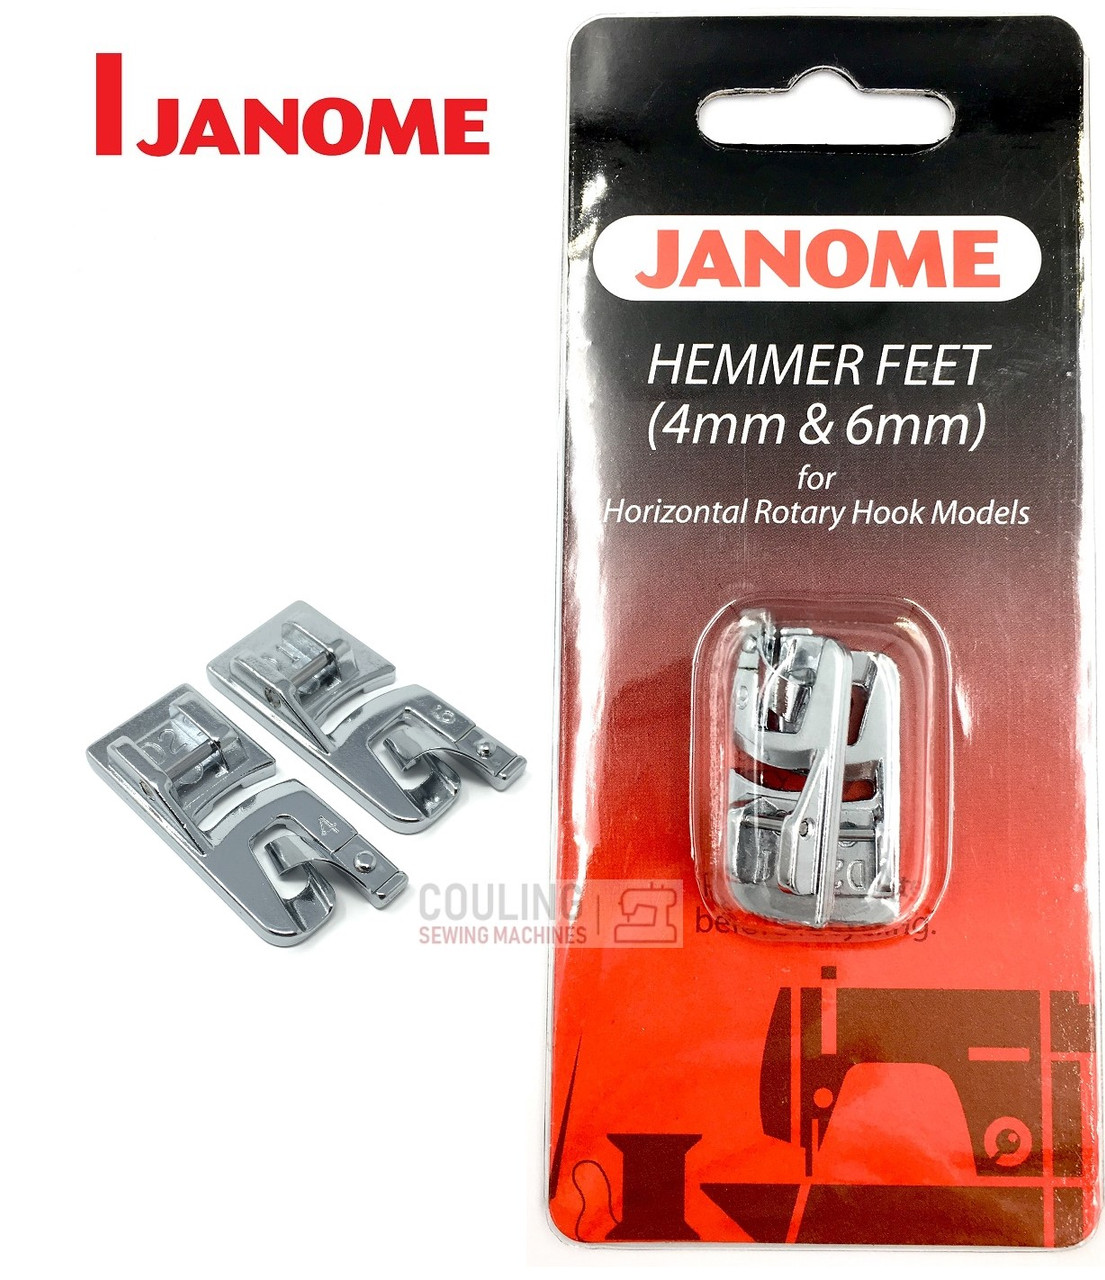 Janome Hemmer Feet 4mm & 6mm